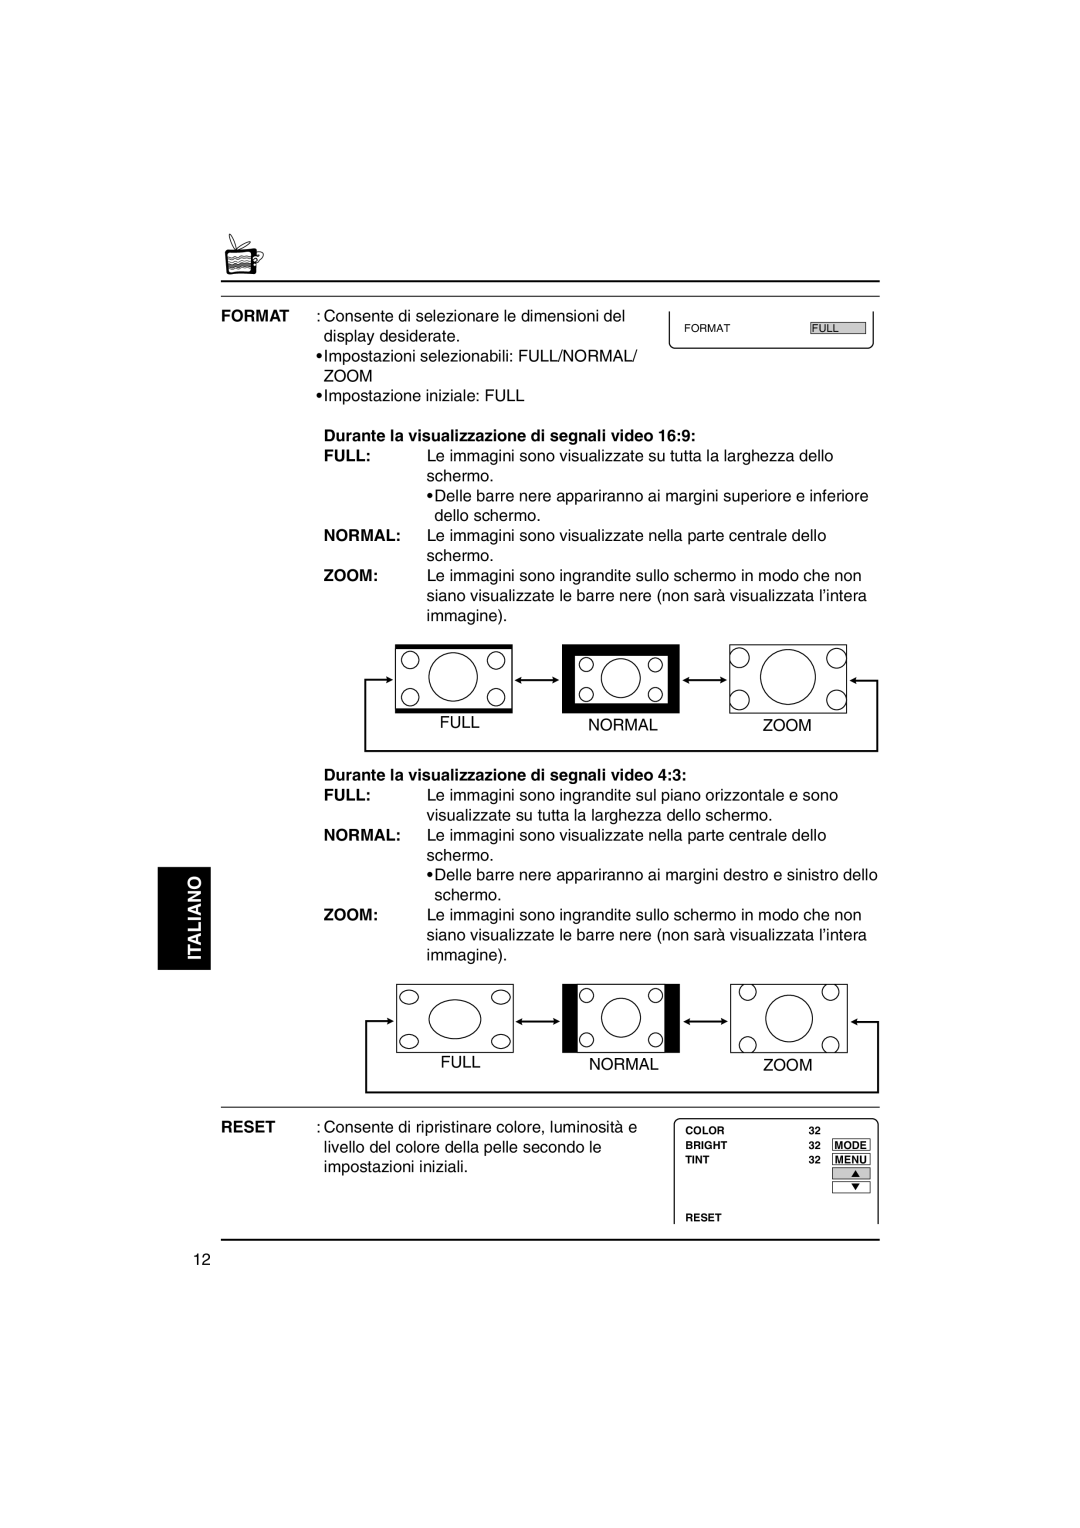 JVC KV-MH6500 manual Normal Zoom, Durante la visualizzazione di segnali video, Full, Italiano 